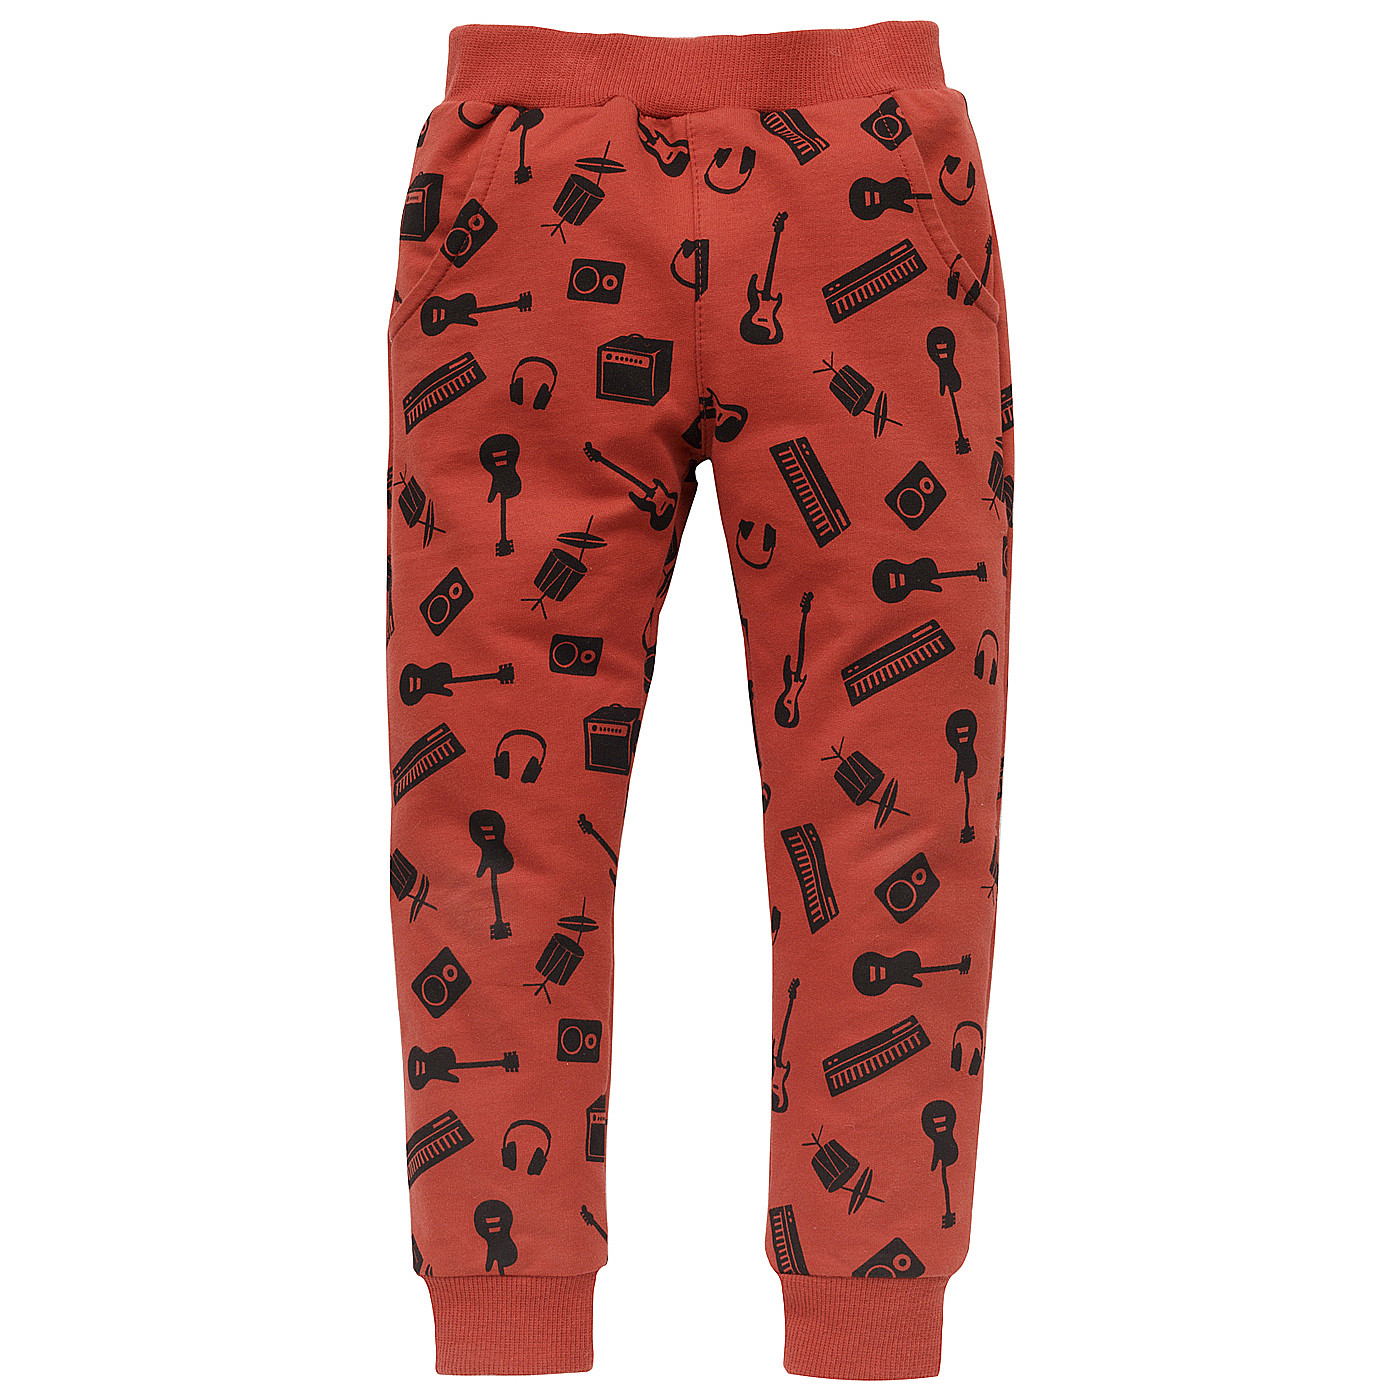 Pinokio Let's Rock Pants Red (Červené kalhoty) 92